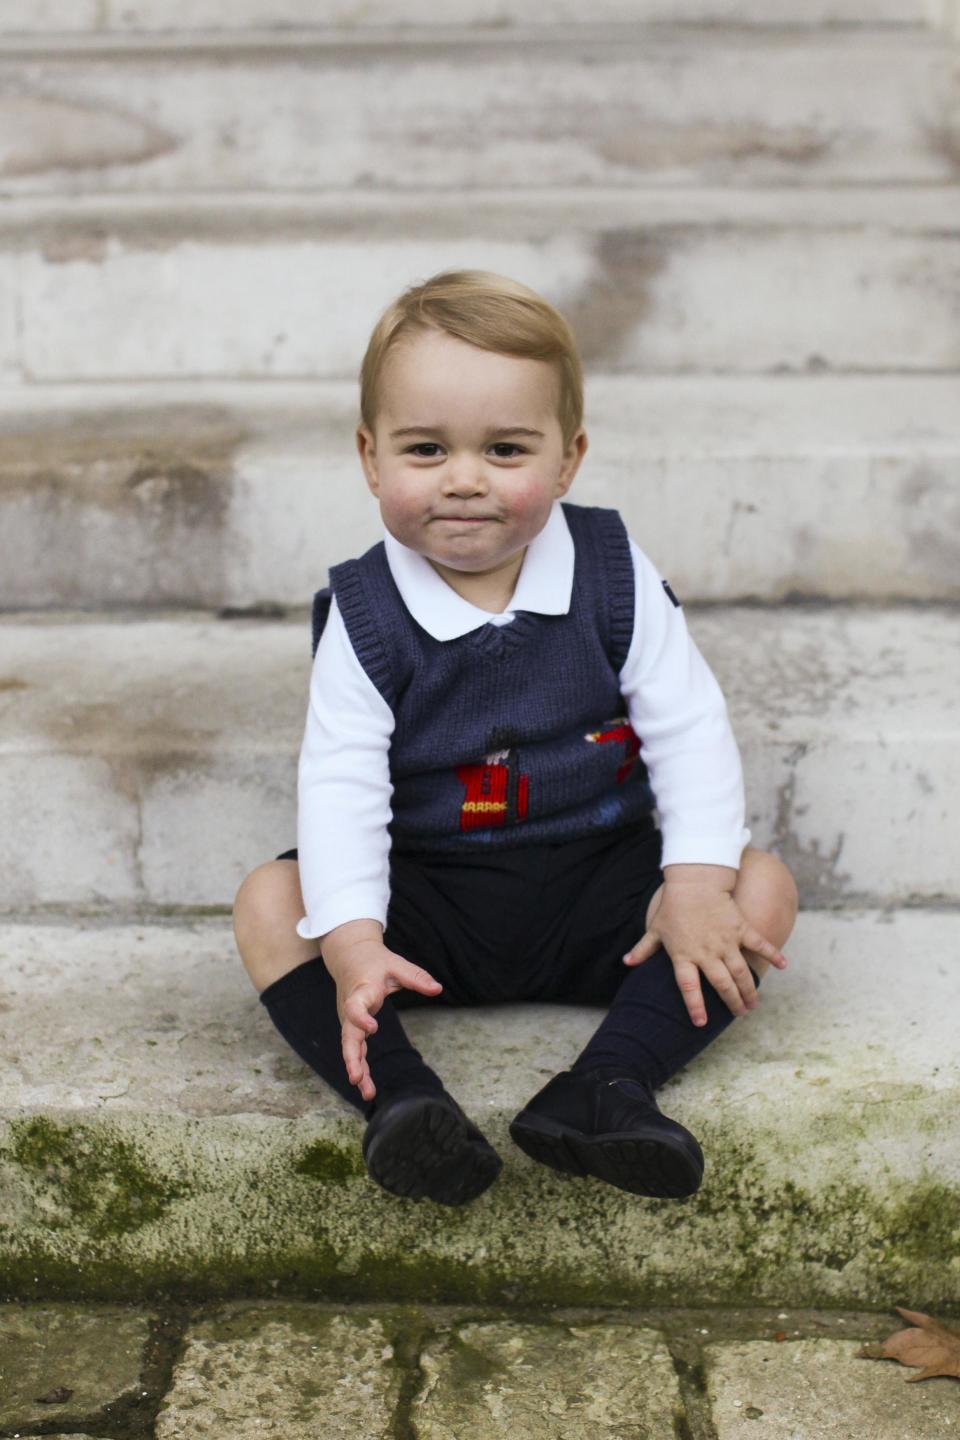 <p>Esta era una de las imágenes del álbum de Navidad que compartieron los duques de Cambridge en 2014. El pequeño George no podía estar más adorable posando en las escalinatas del palacio de Kensington. (Foto: TRH / Reuters). </p>